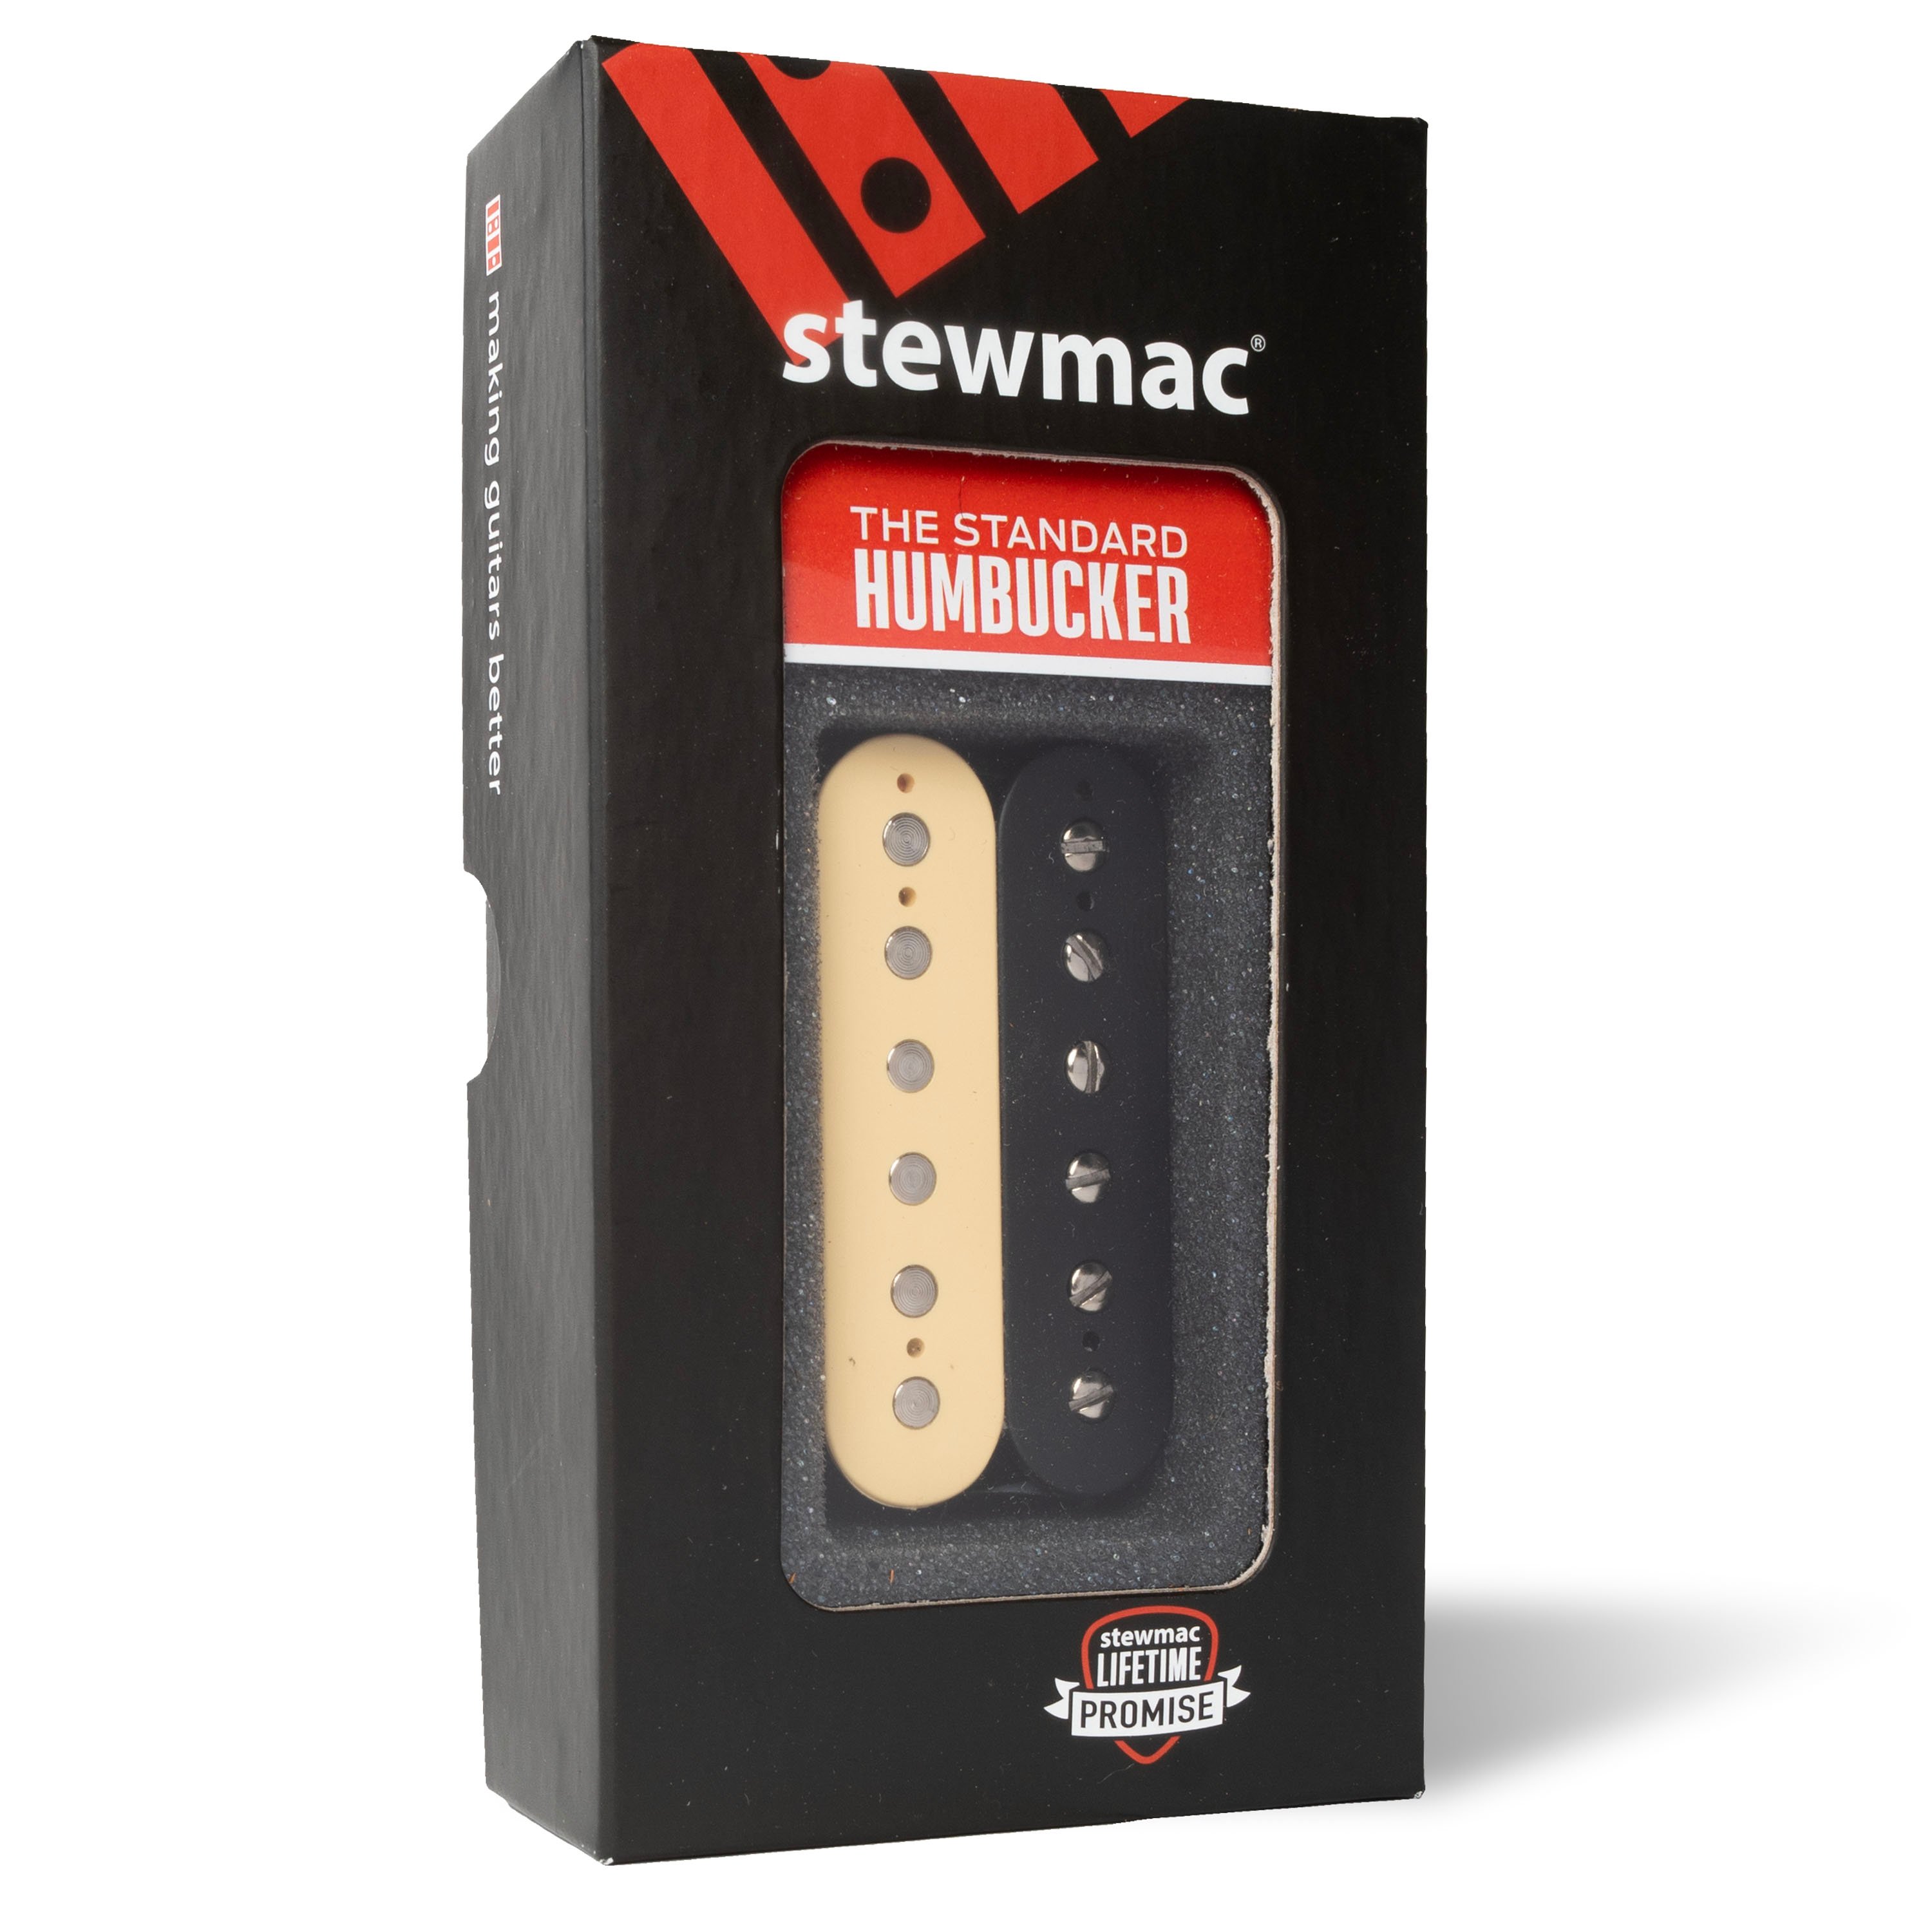 StewMac Humbucker Pickups